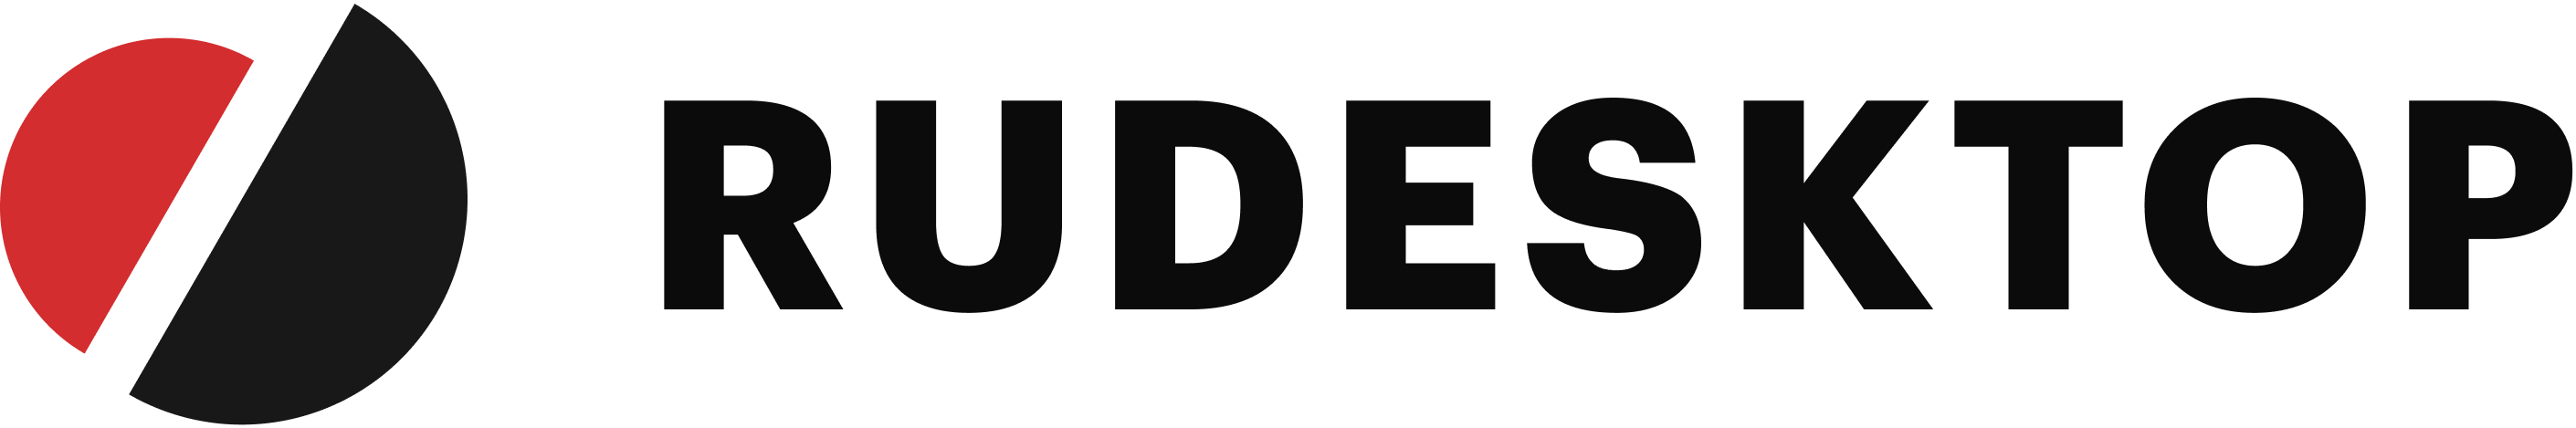 Rudesktop logo